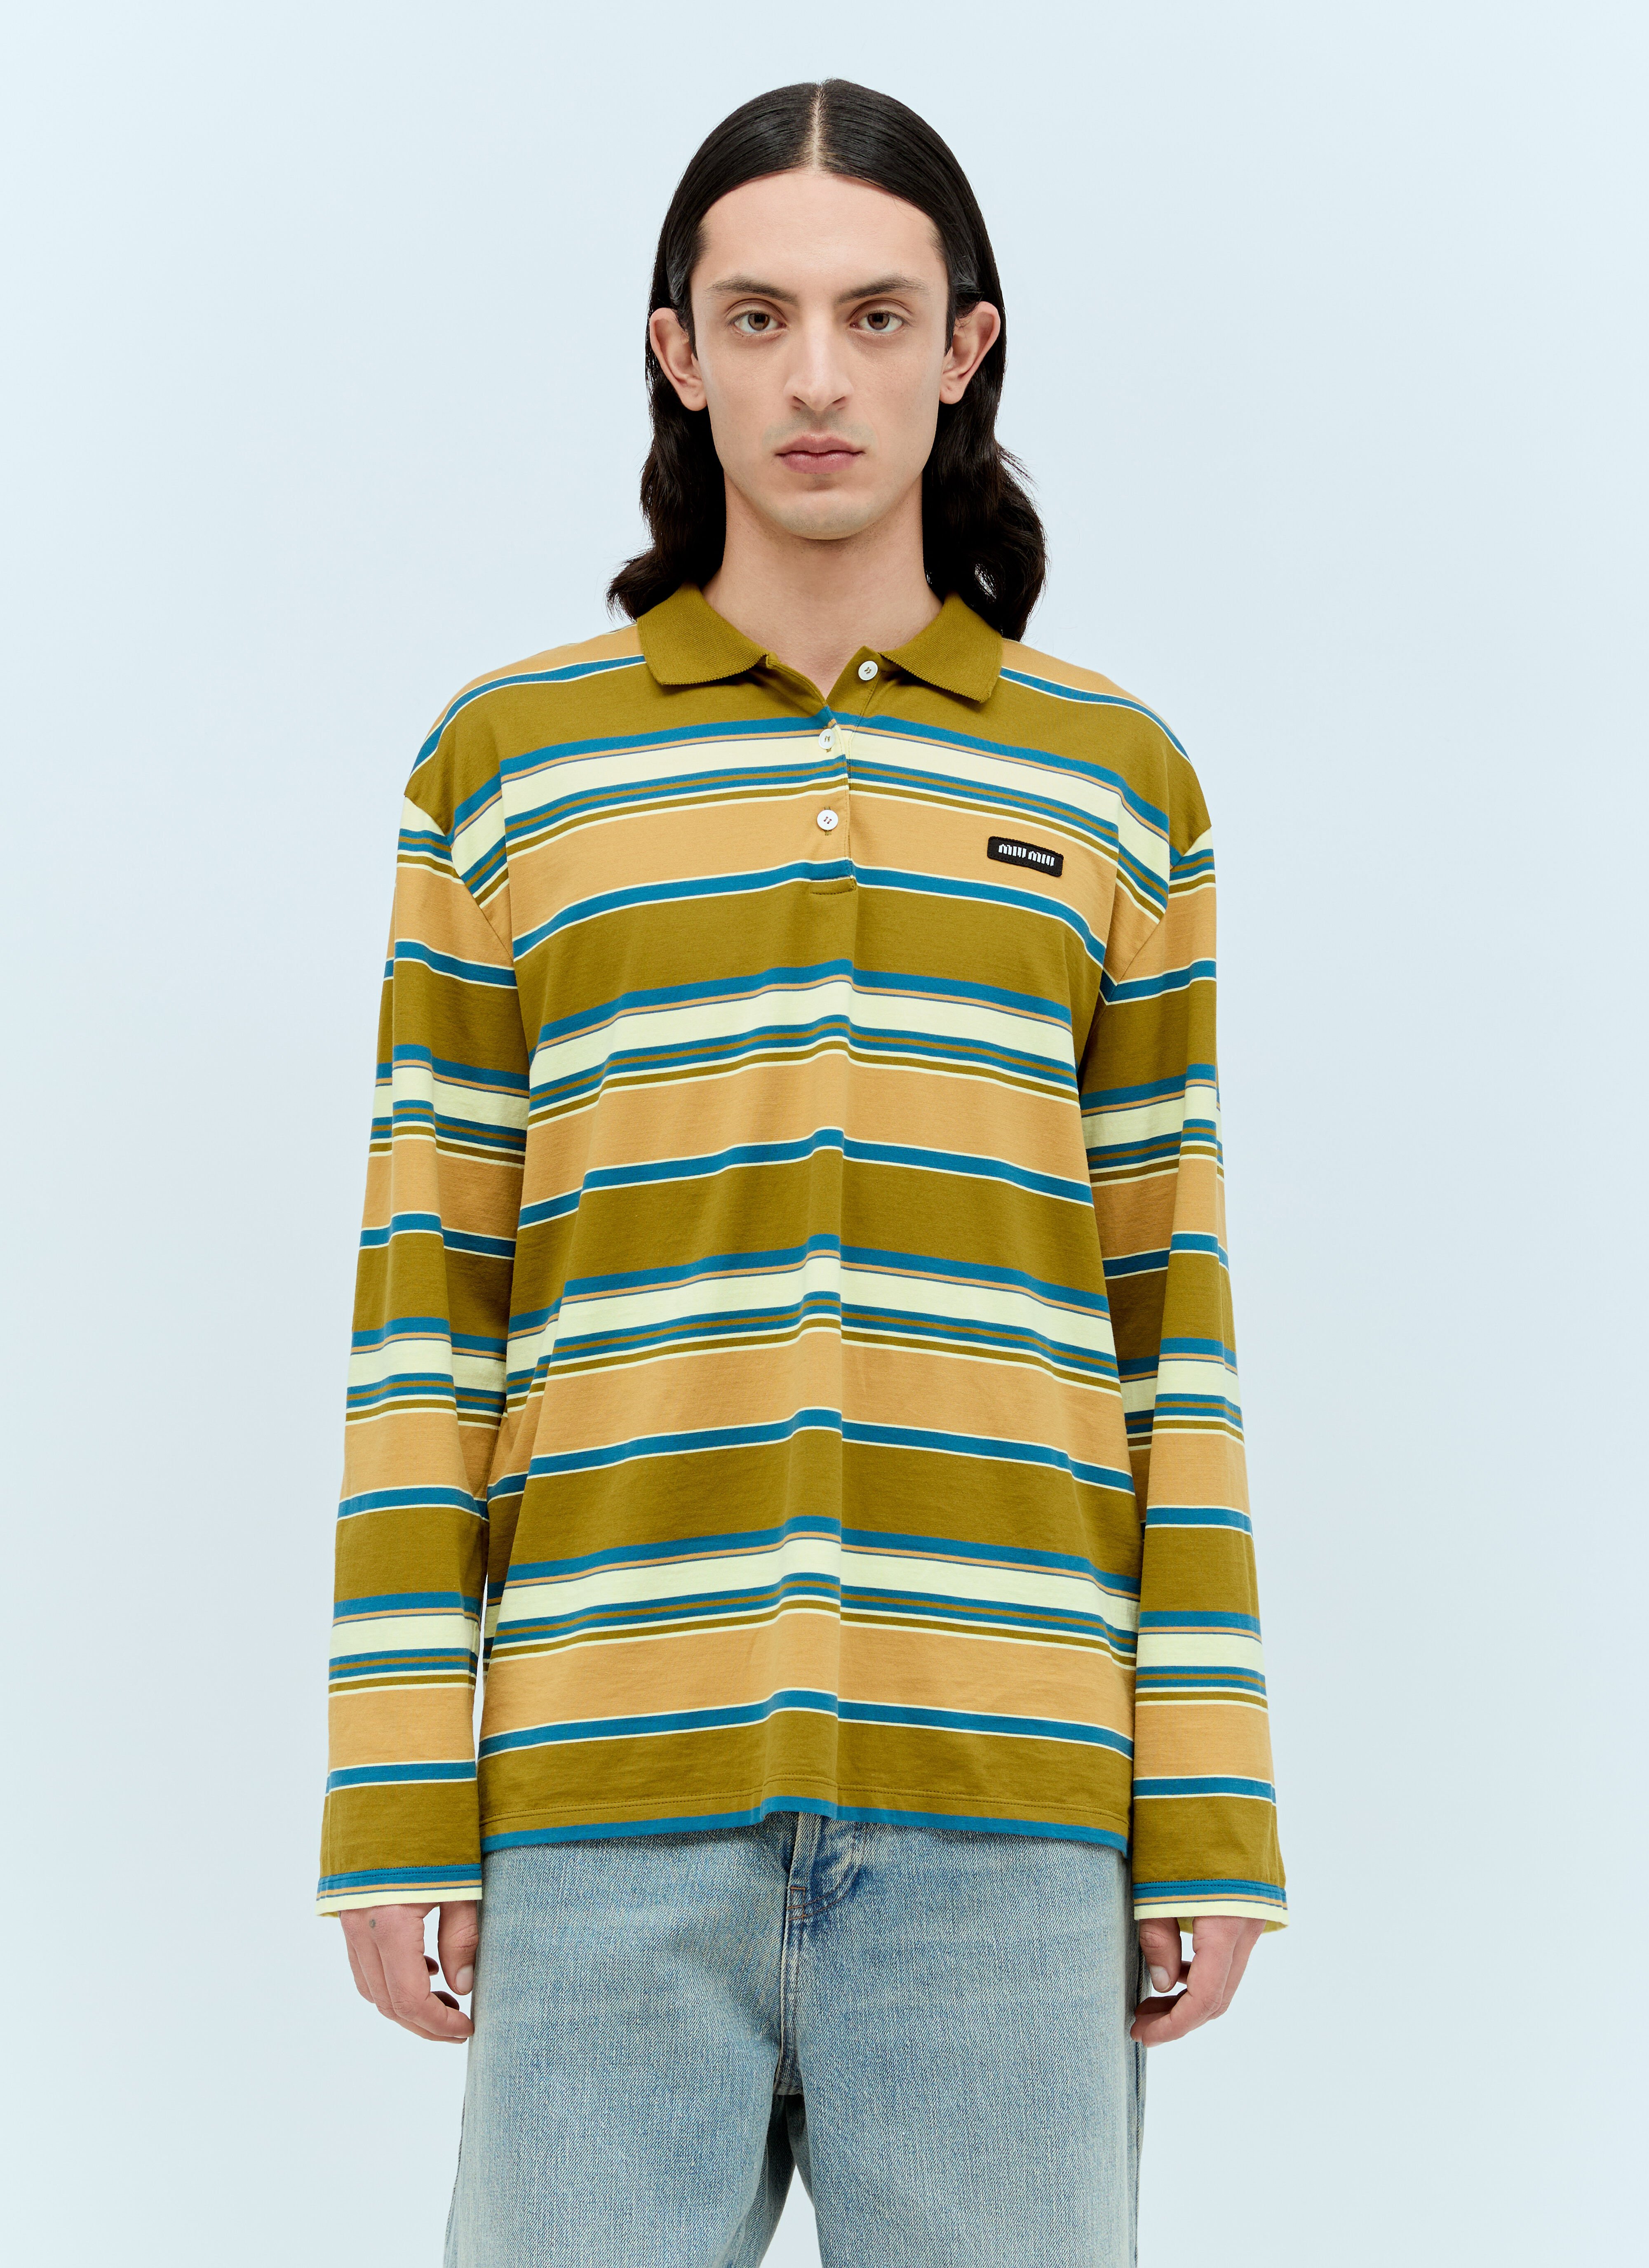 Miu Miu Striped Polo T-Shirt Beige miu0155005